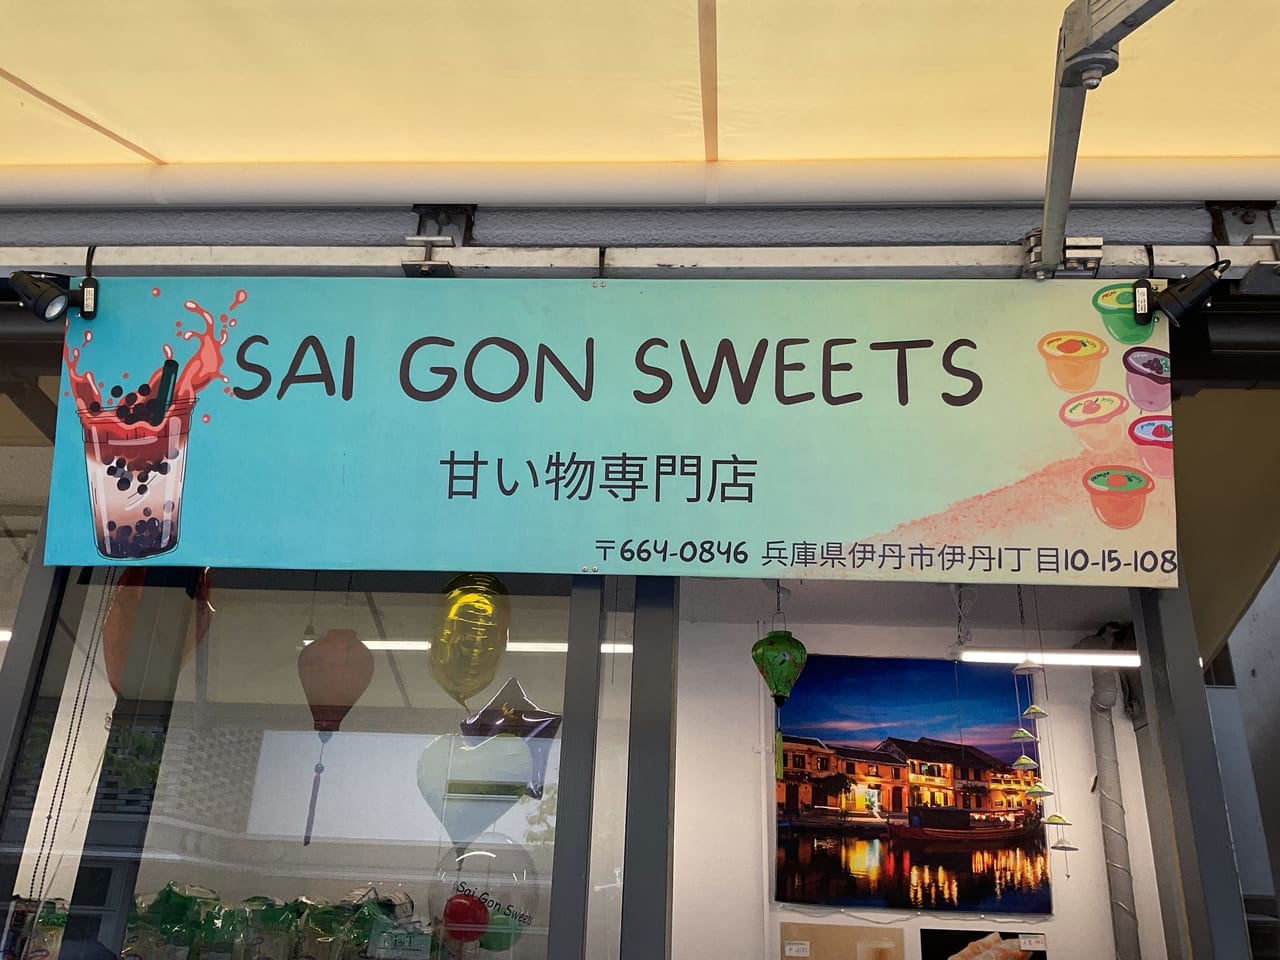 sai gon sweets